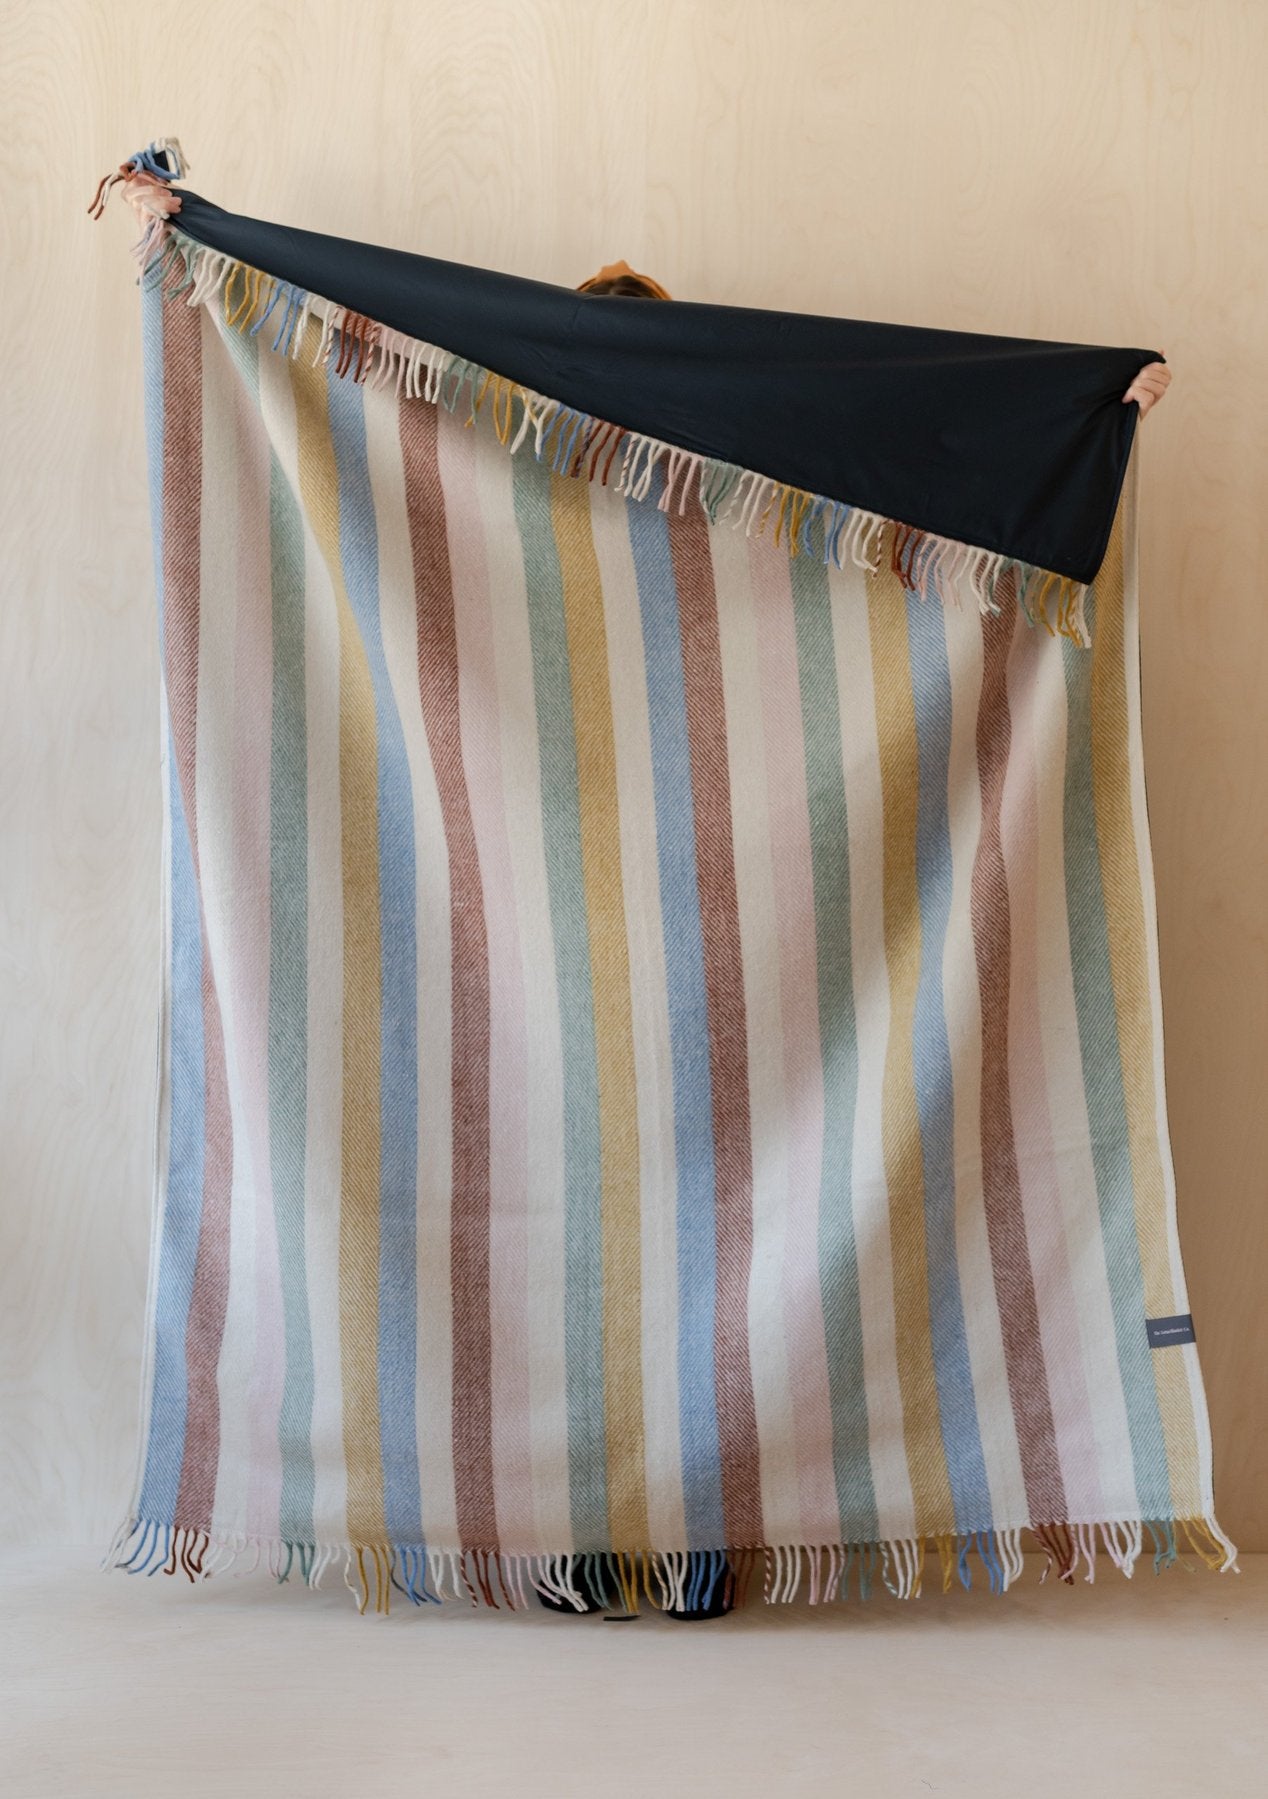 The Tartan Blanket Co. Recycled Wool Waterproof Picnic Blanket - Rainbow Herringbone Check